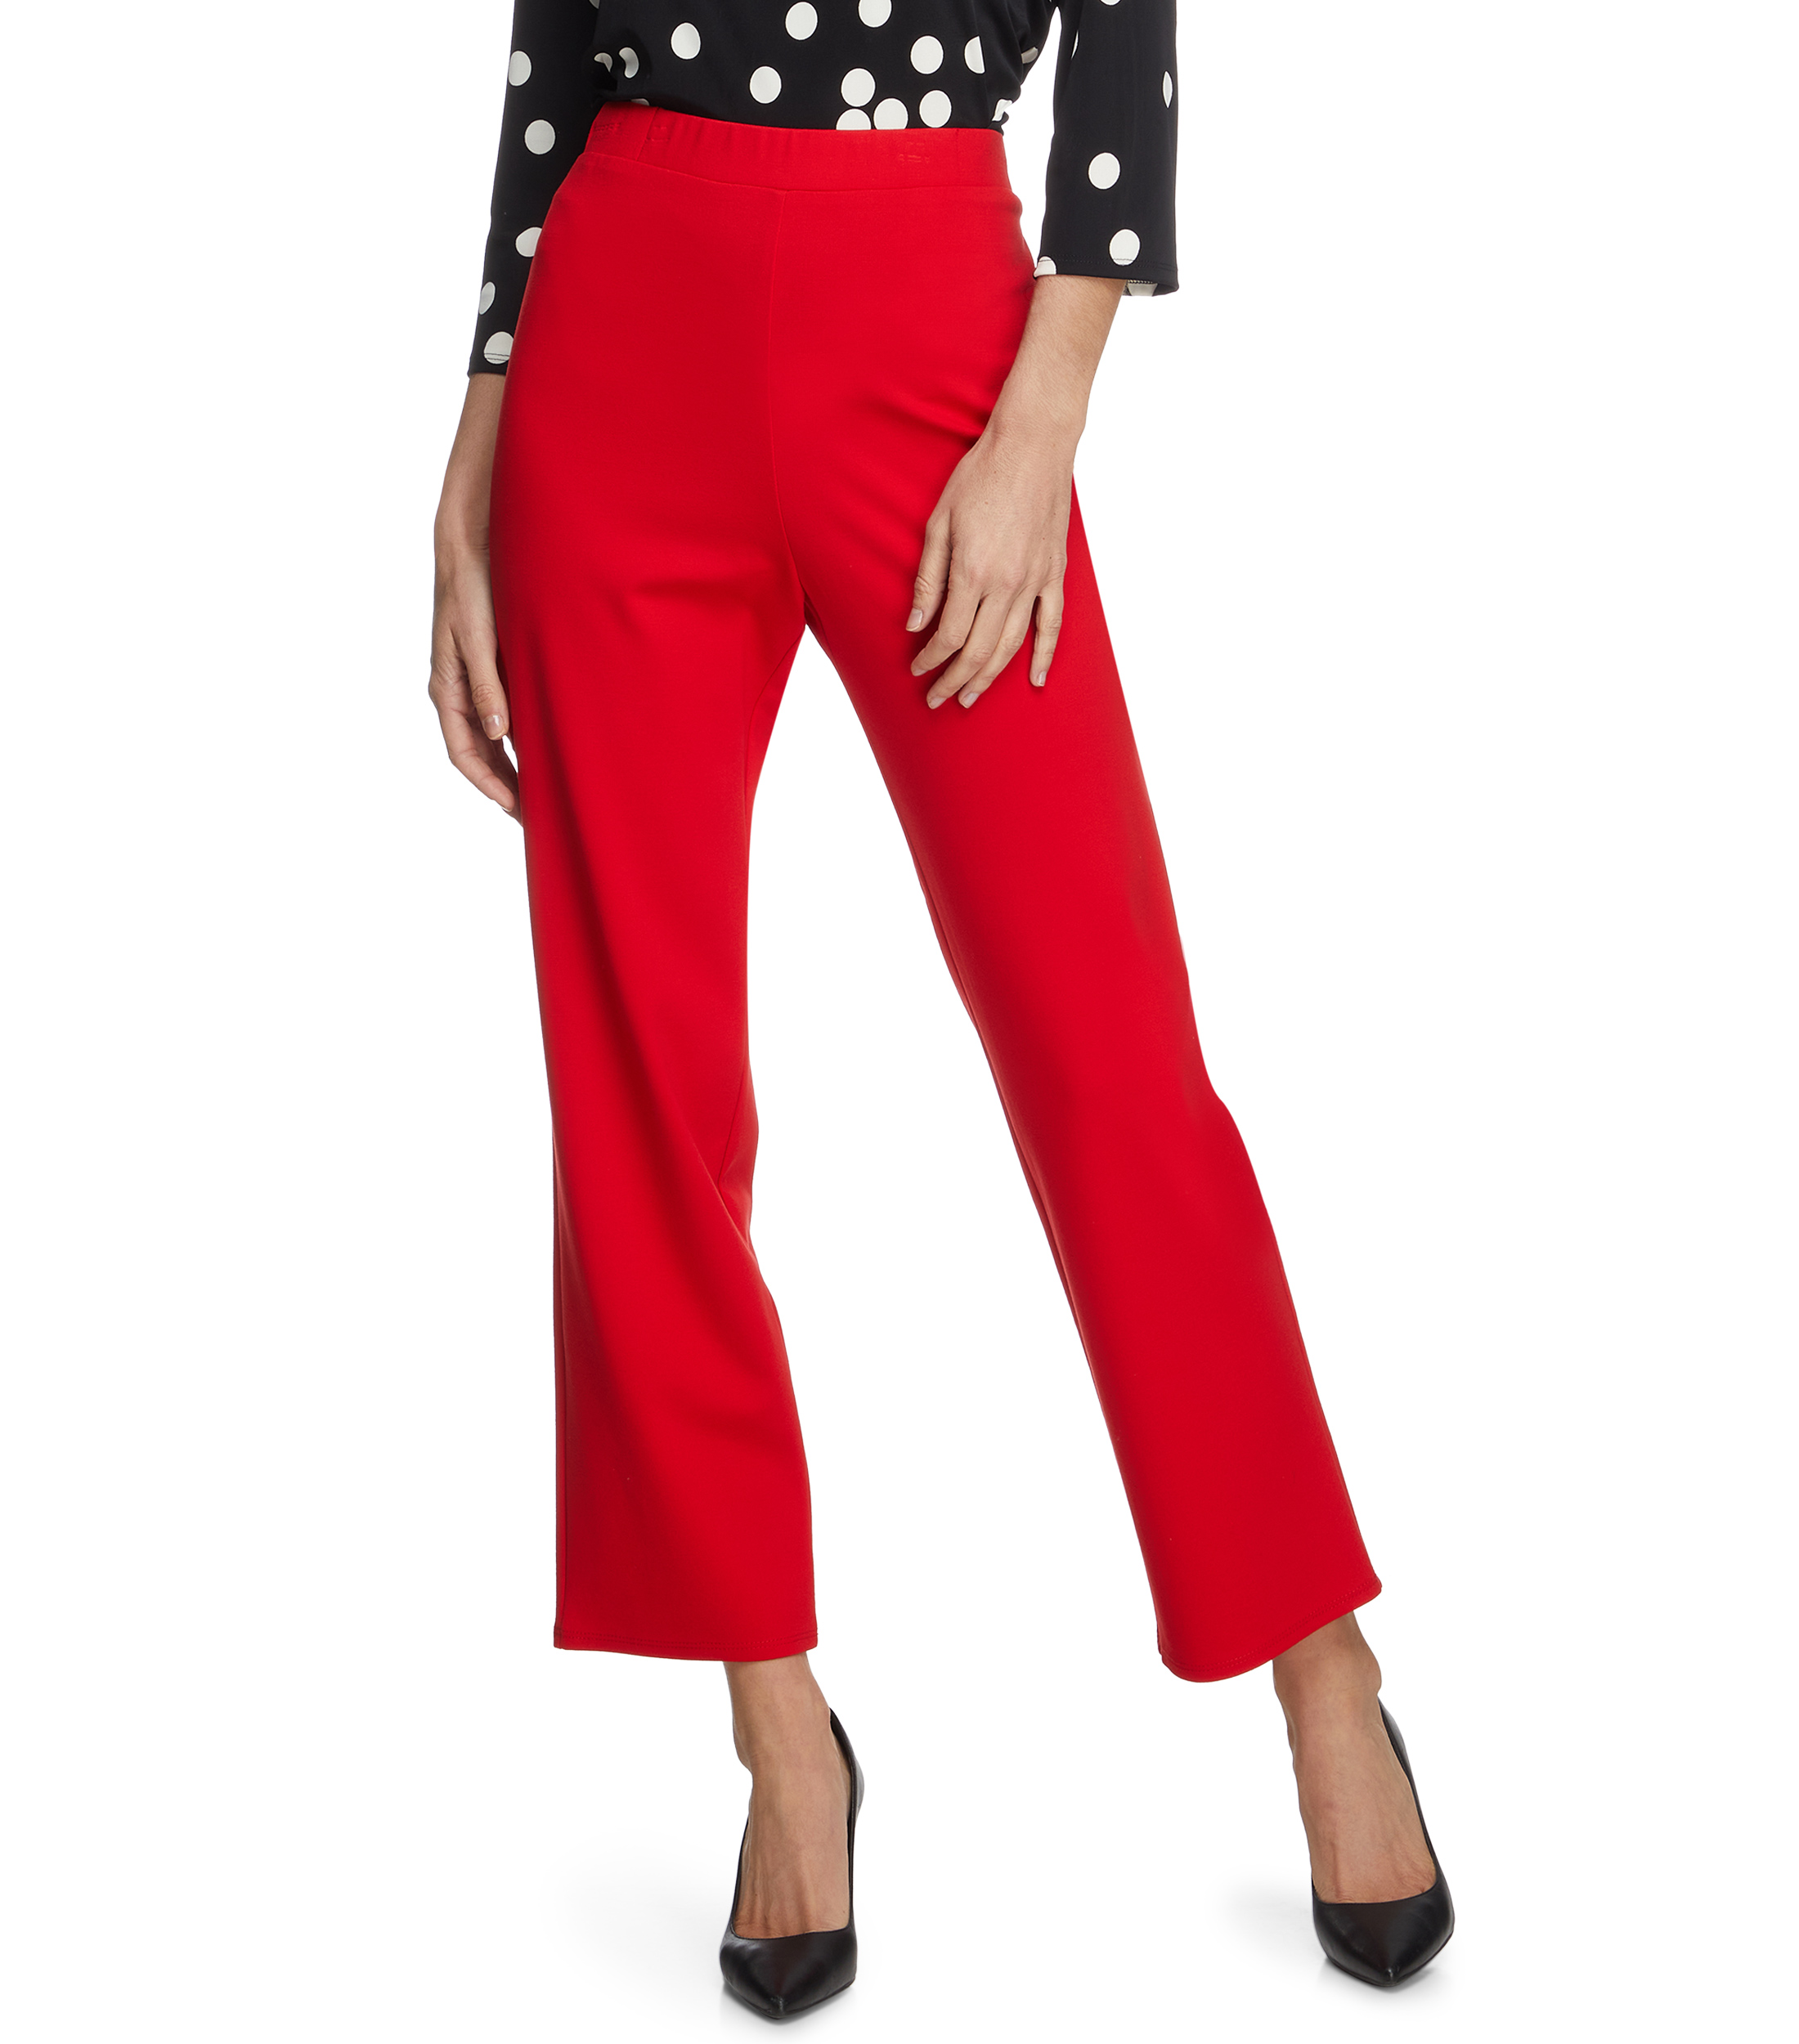 Pantalón de vestir acampanado pantalon de vestir rojo mujer - Glow Fashion